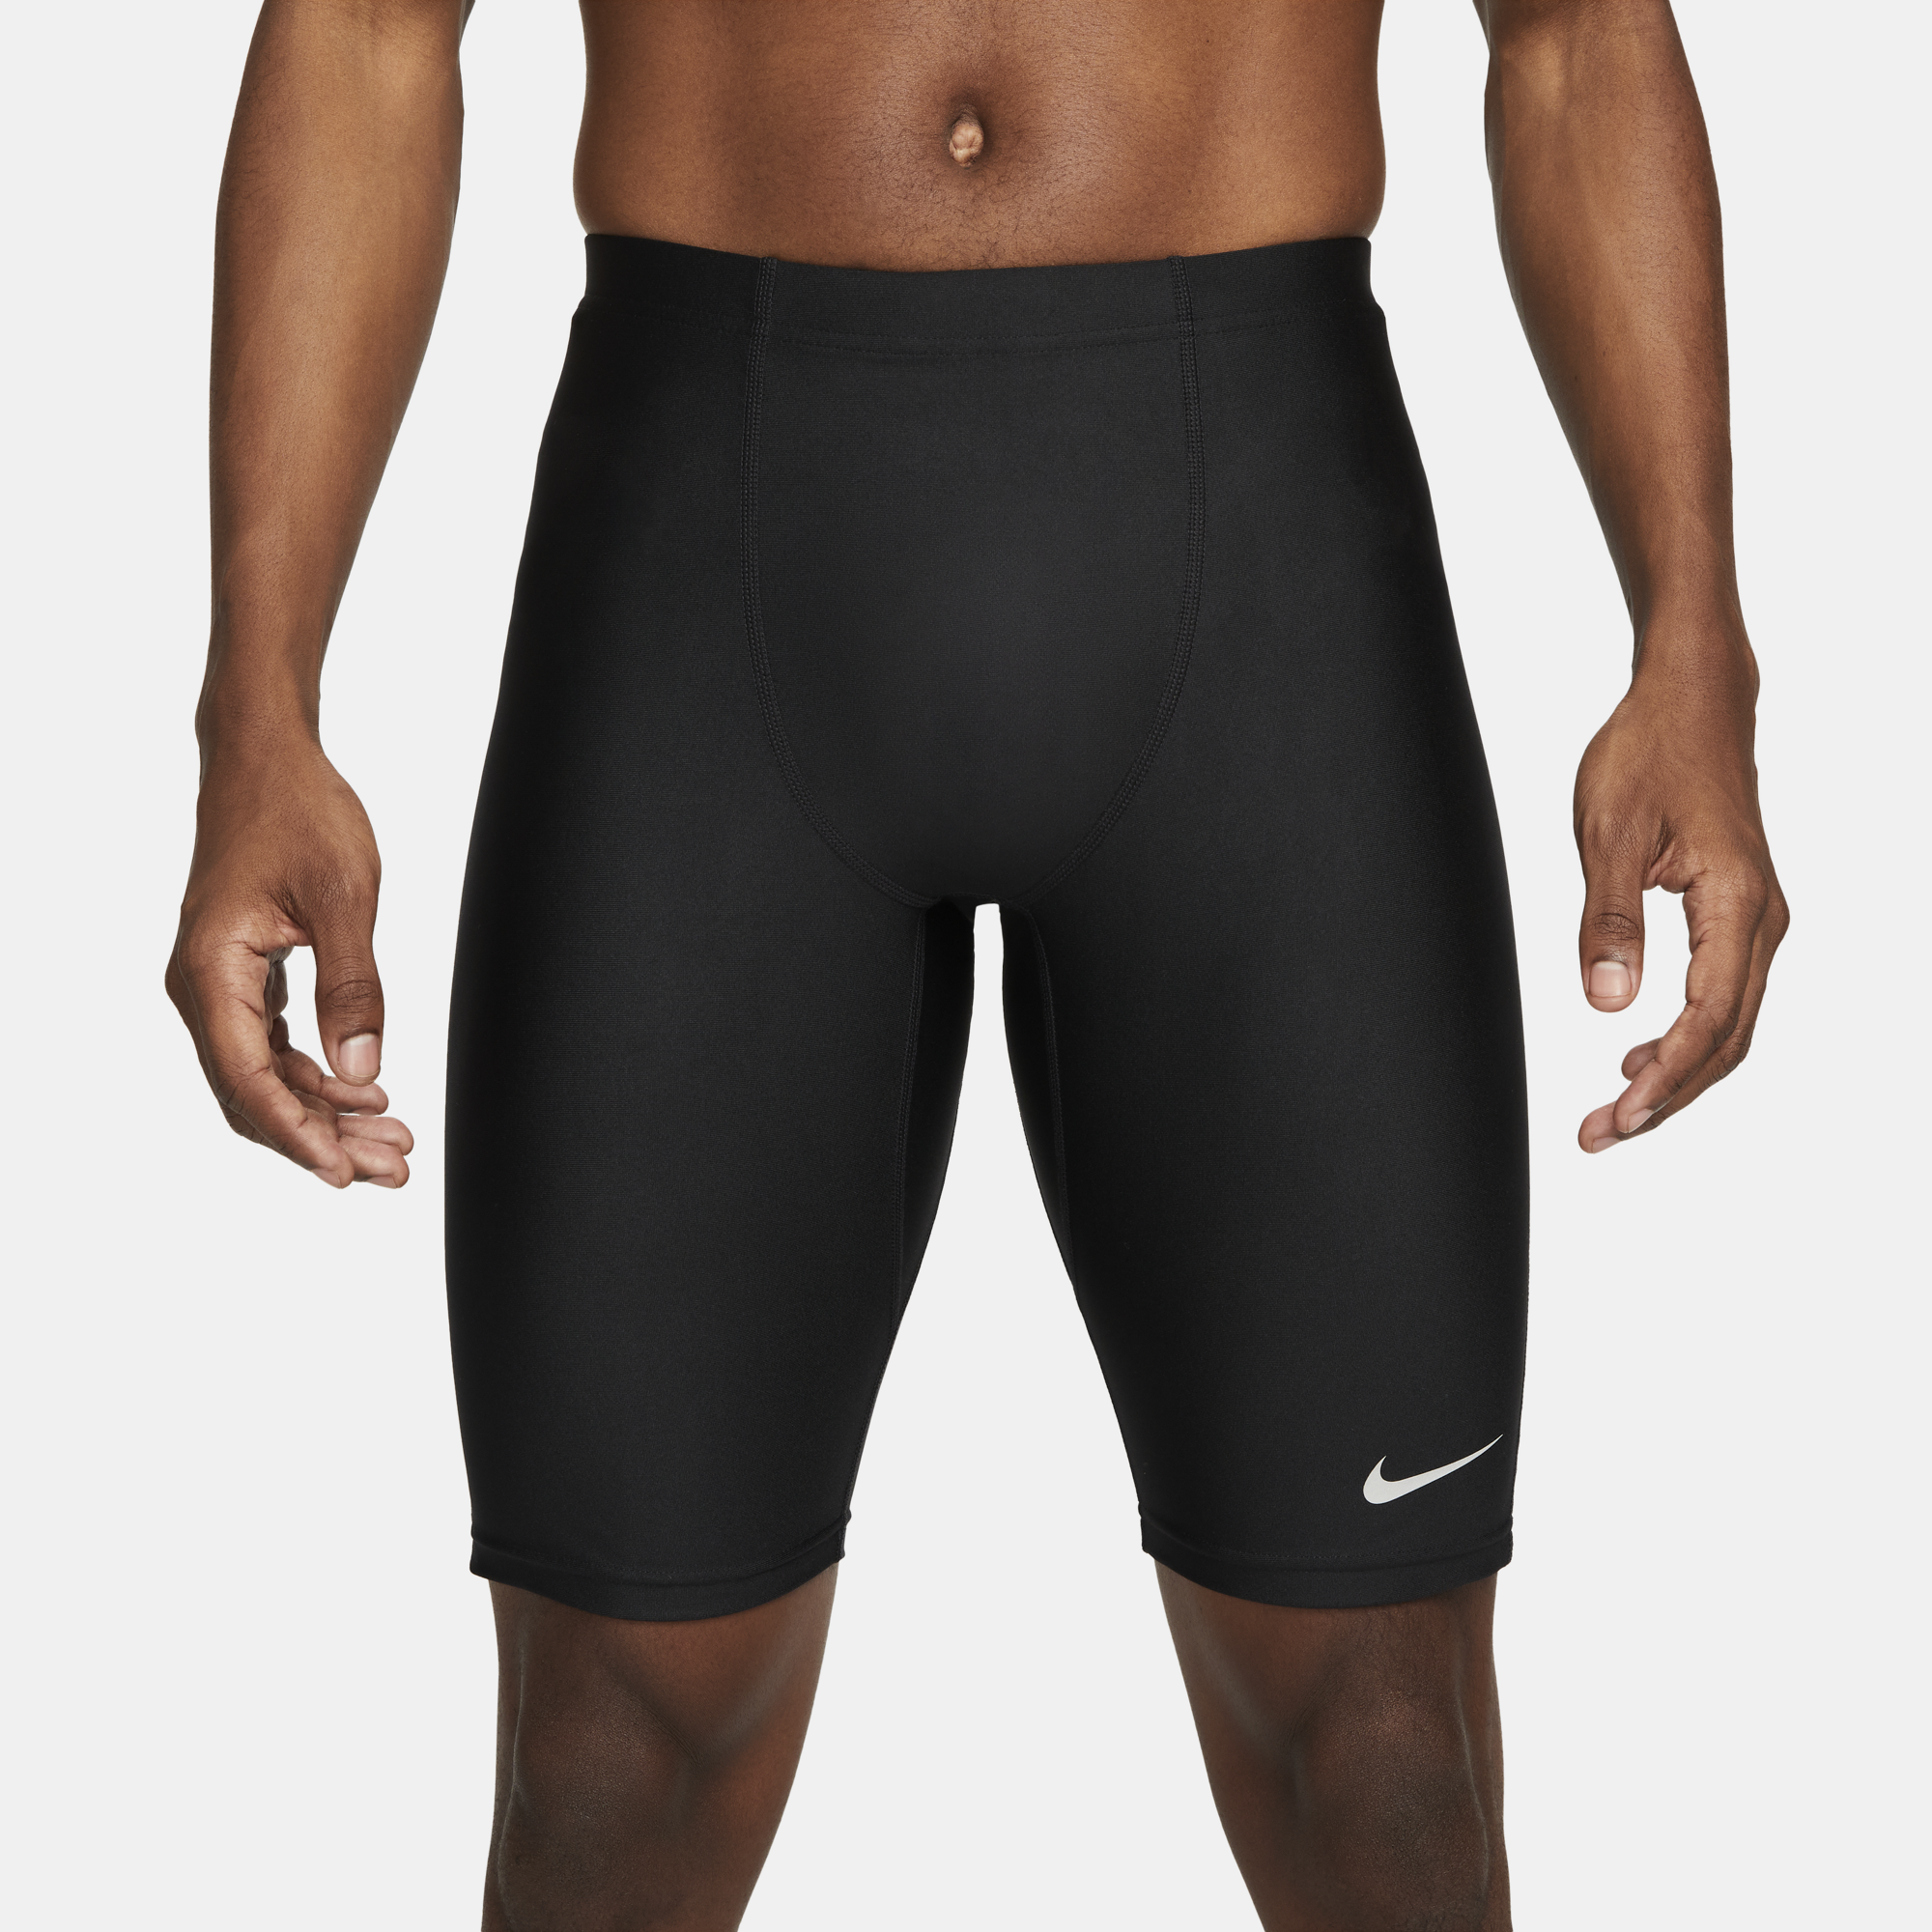 Bermuda Compressão Nike Fast Half Masculina